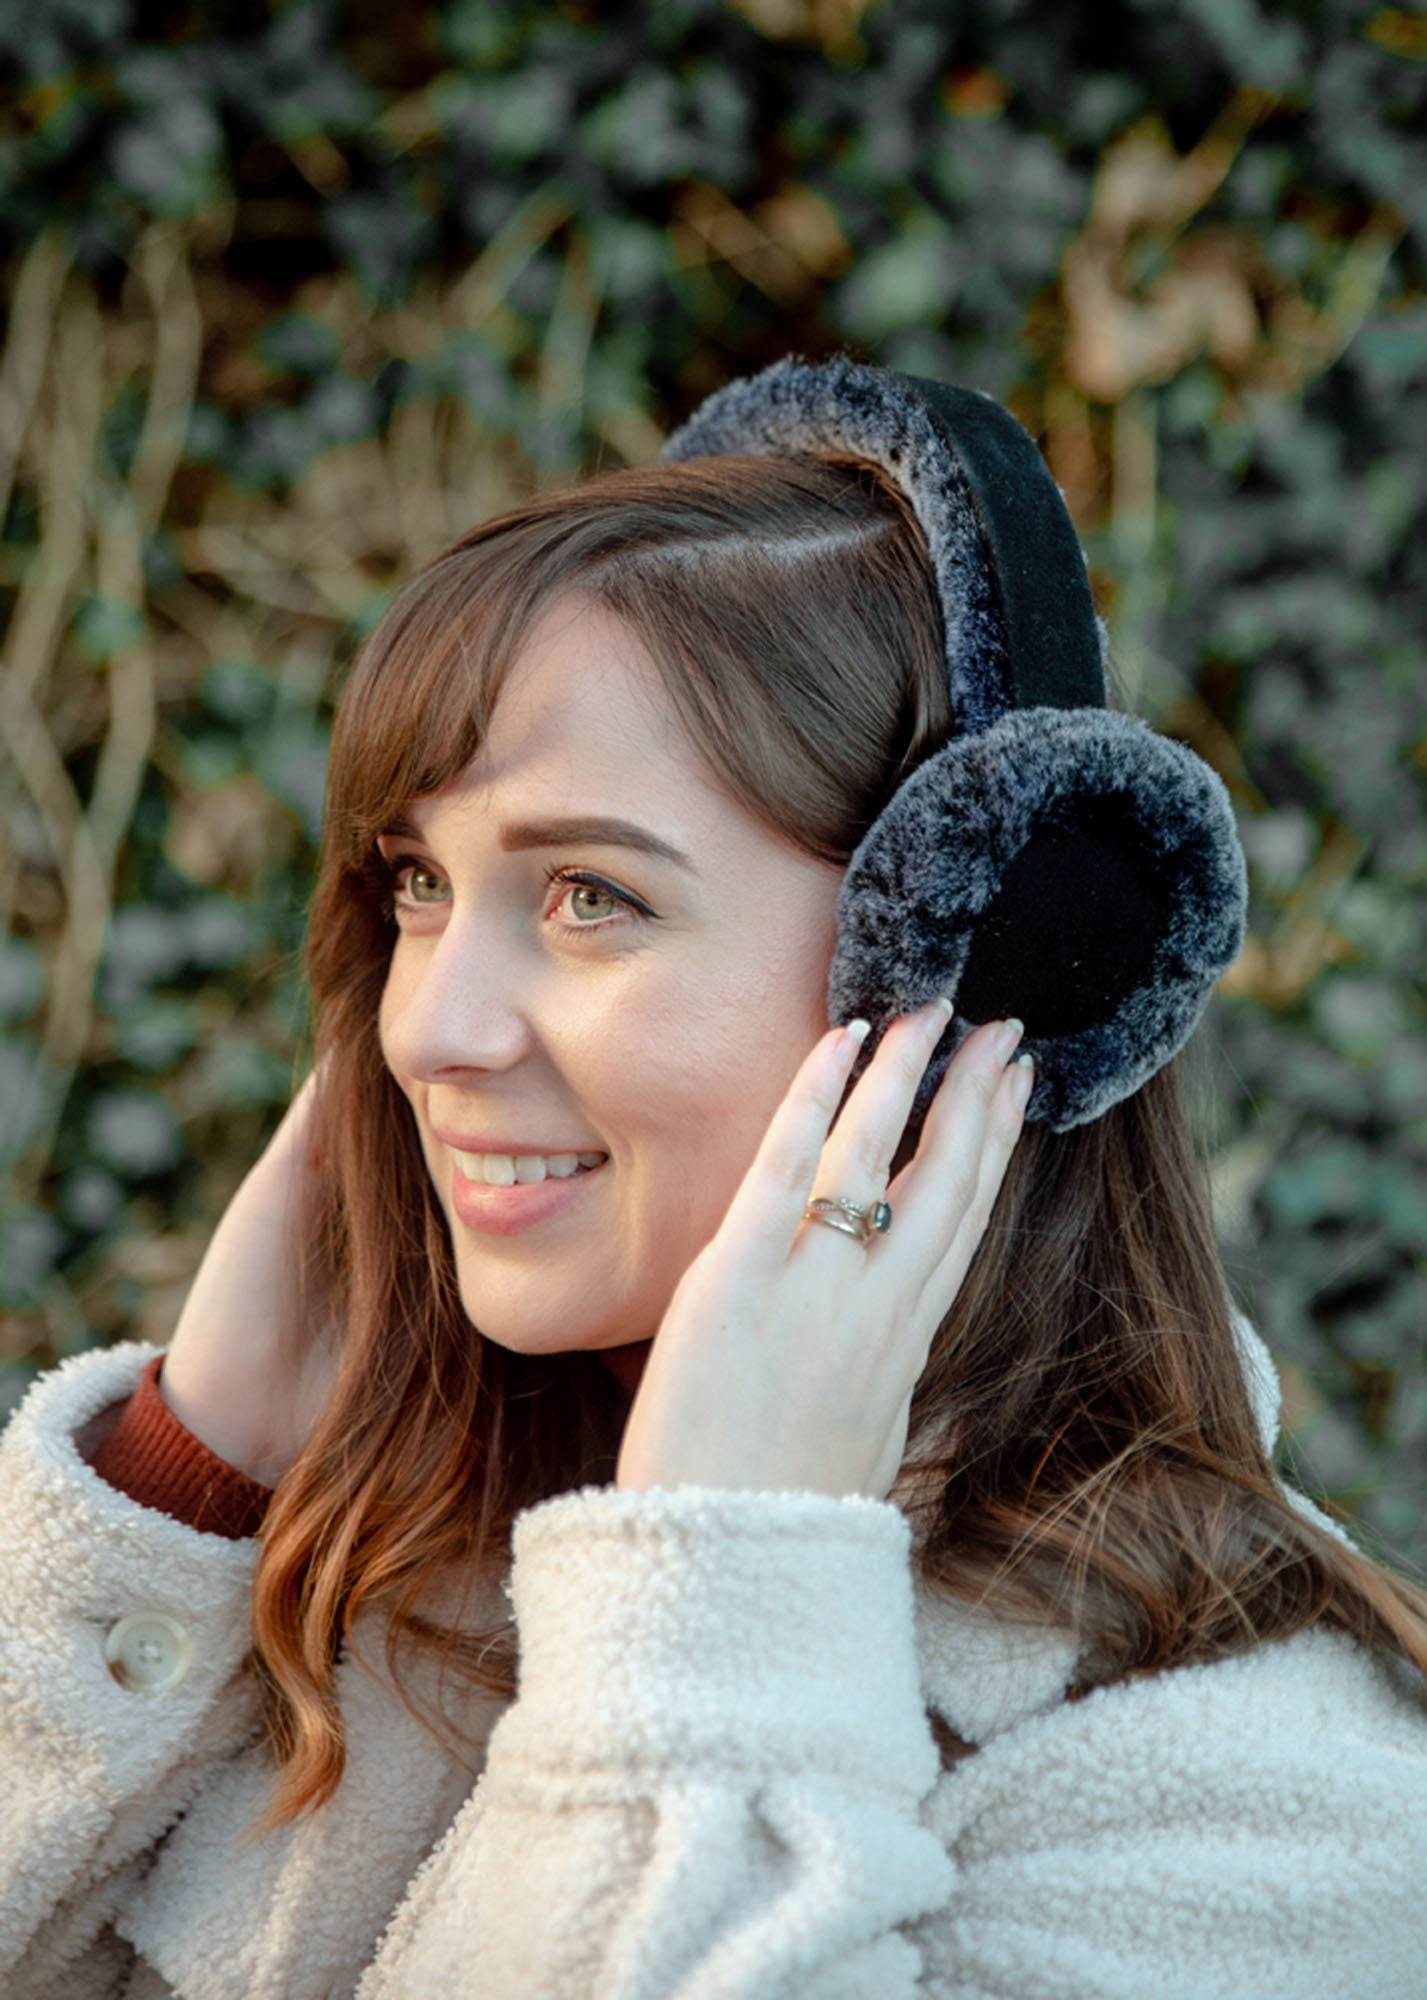 Happy date Foldable Winter Ear Muffs Faux Plush Warm Earmuffs Cute Foldable  Outdoor Ear Warmers For Women Girls 